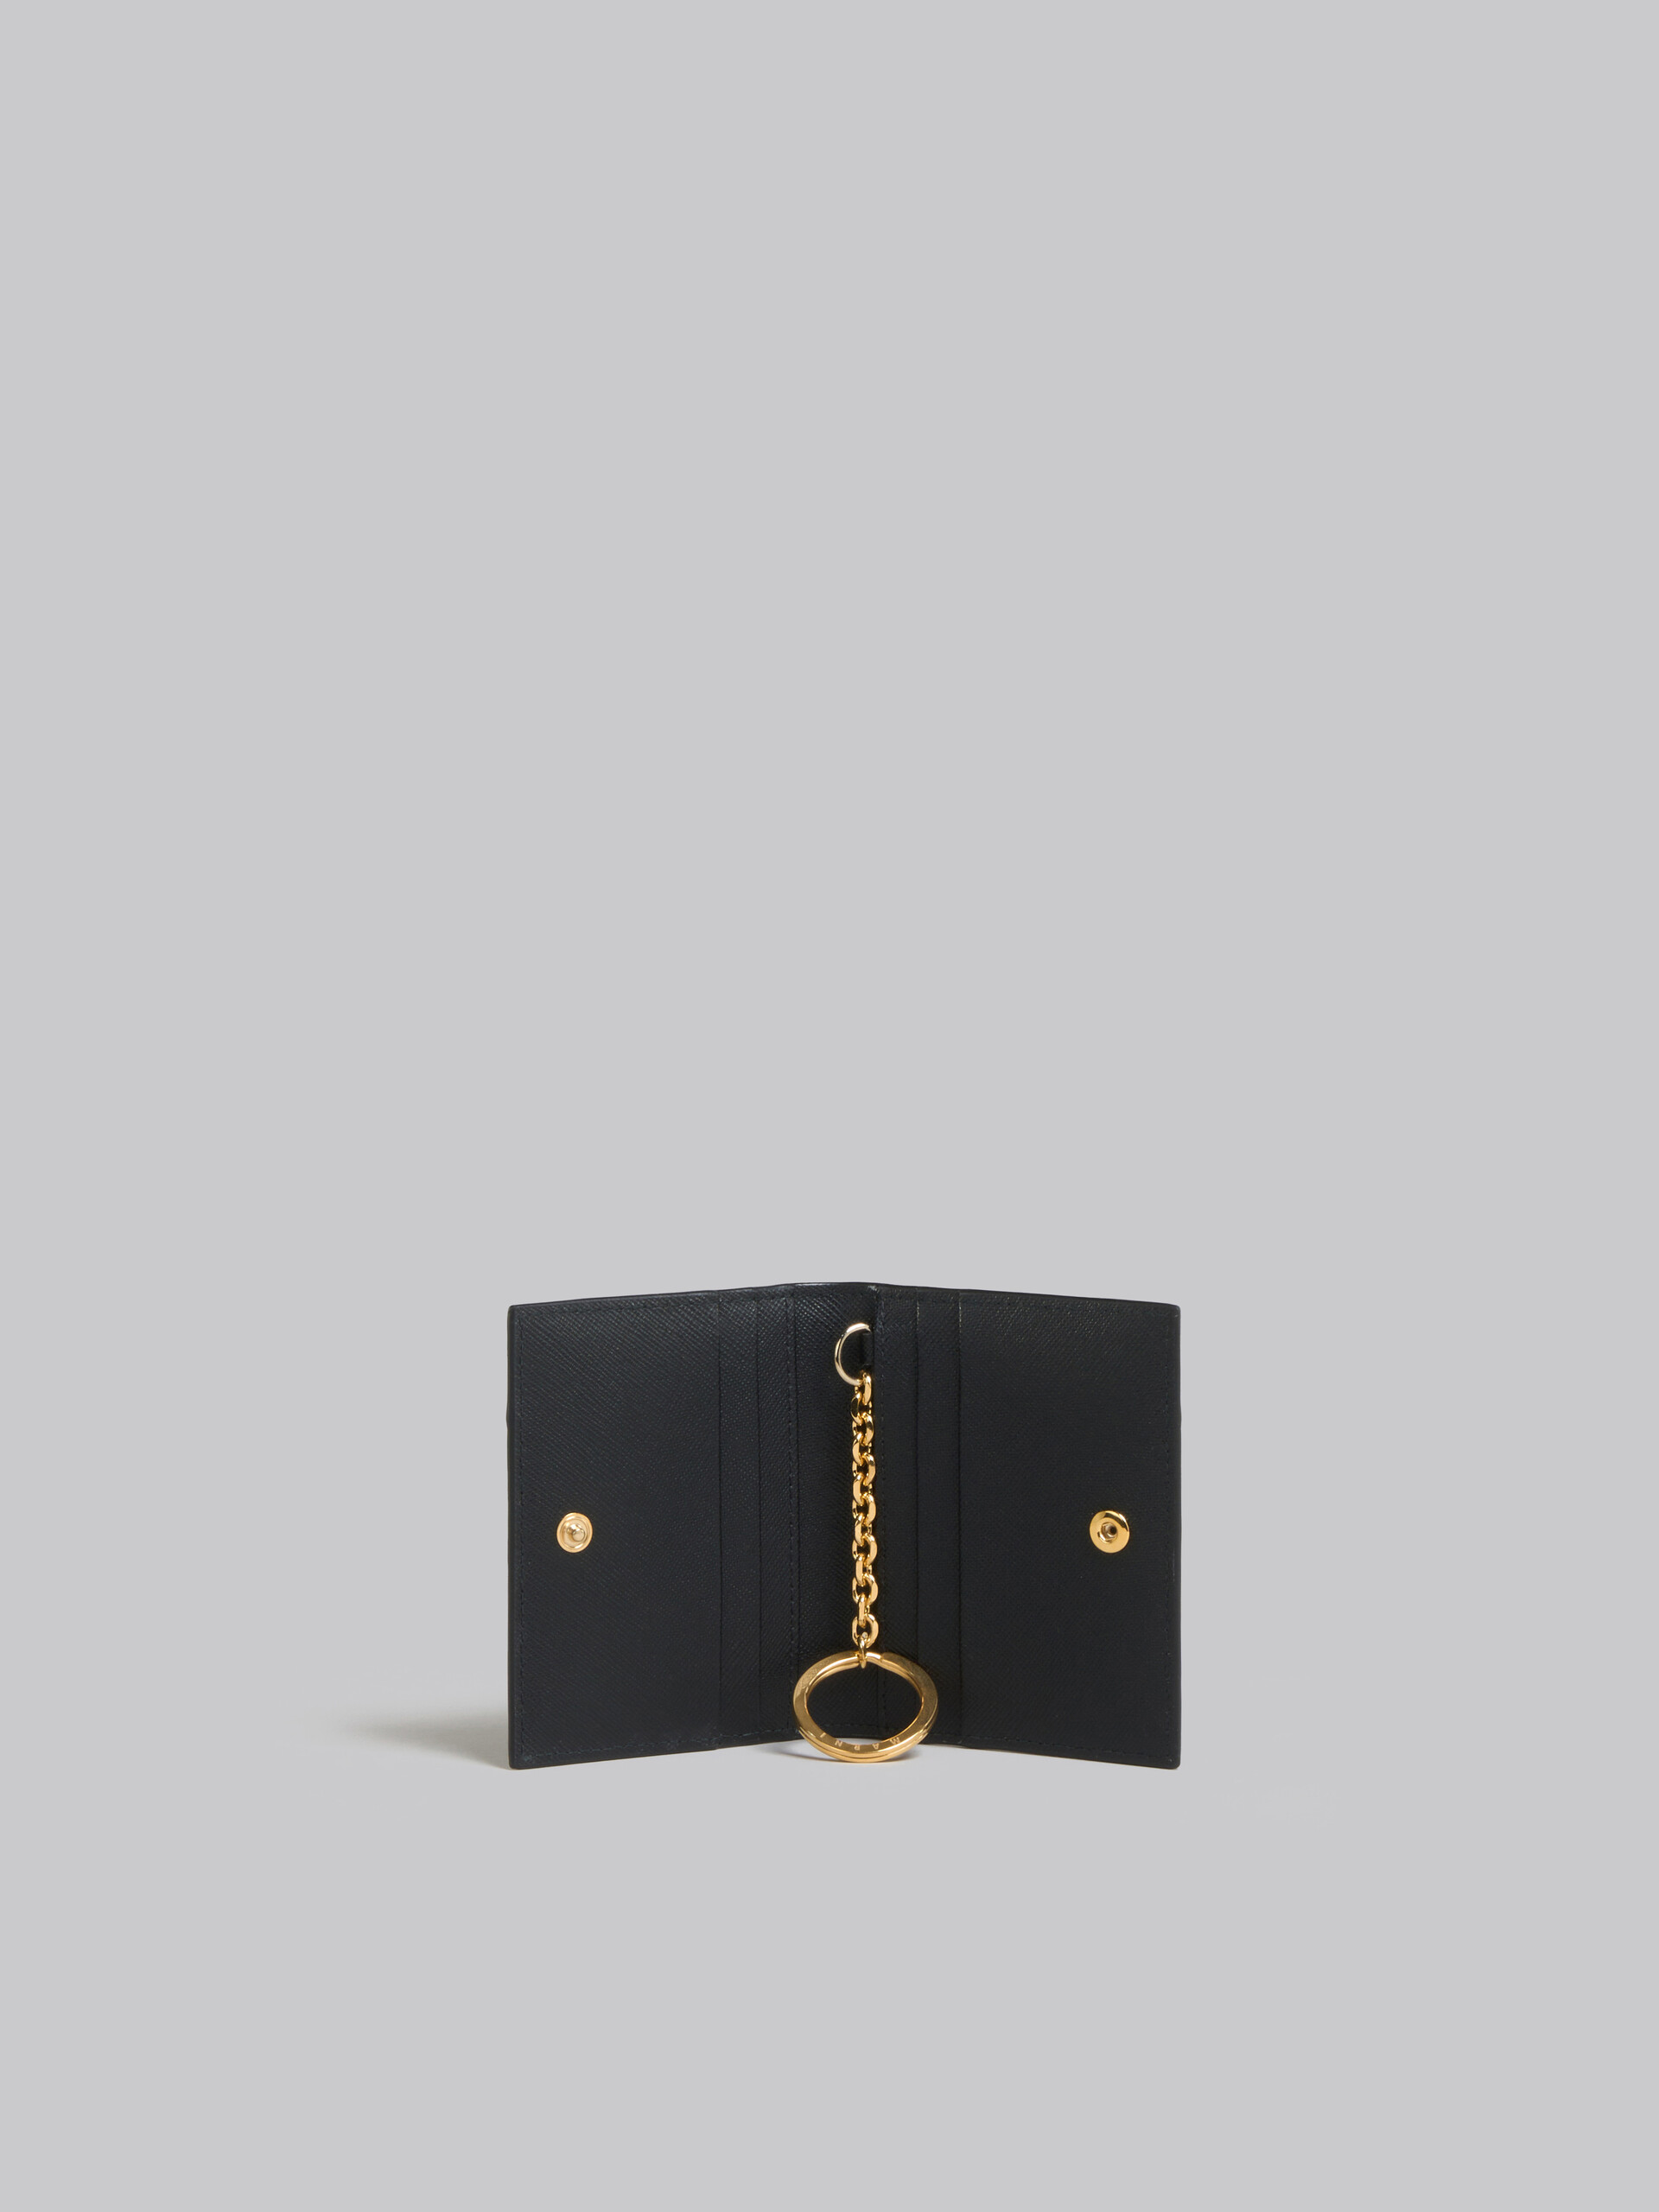 Porte-cartes en cuir saffiano noir - Portefeuilles - Image 2